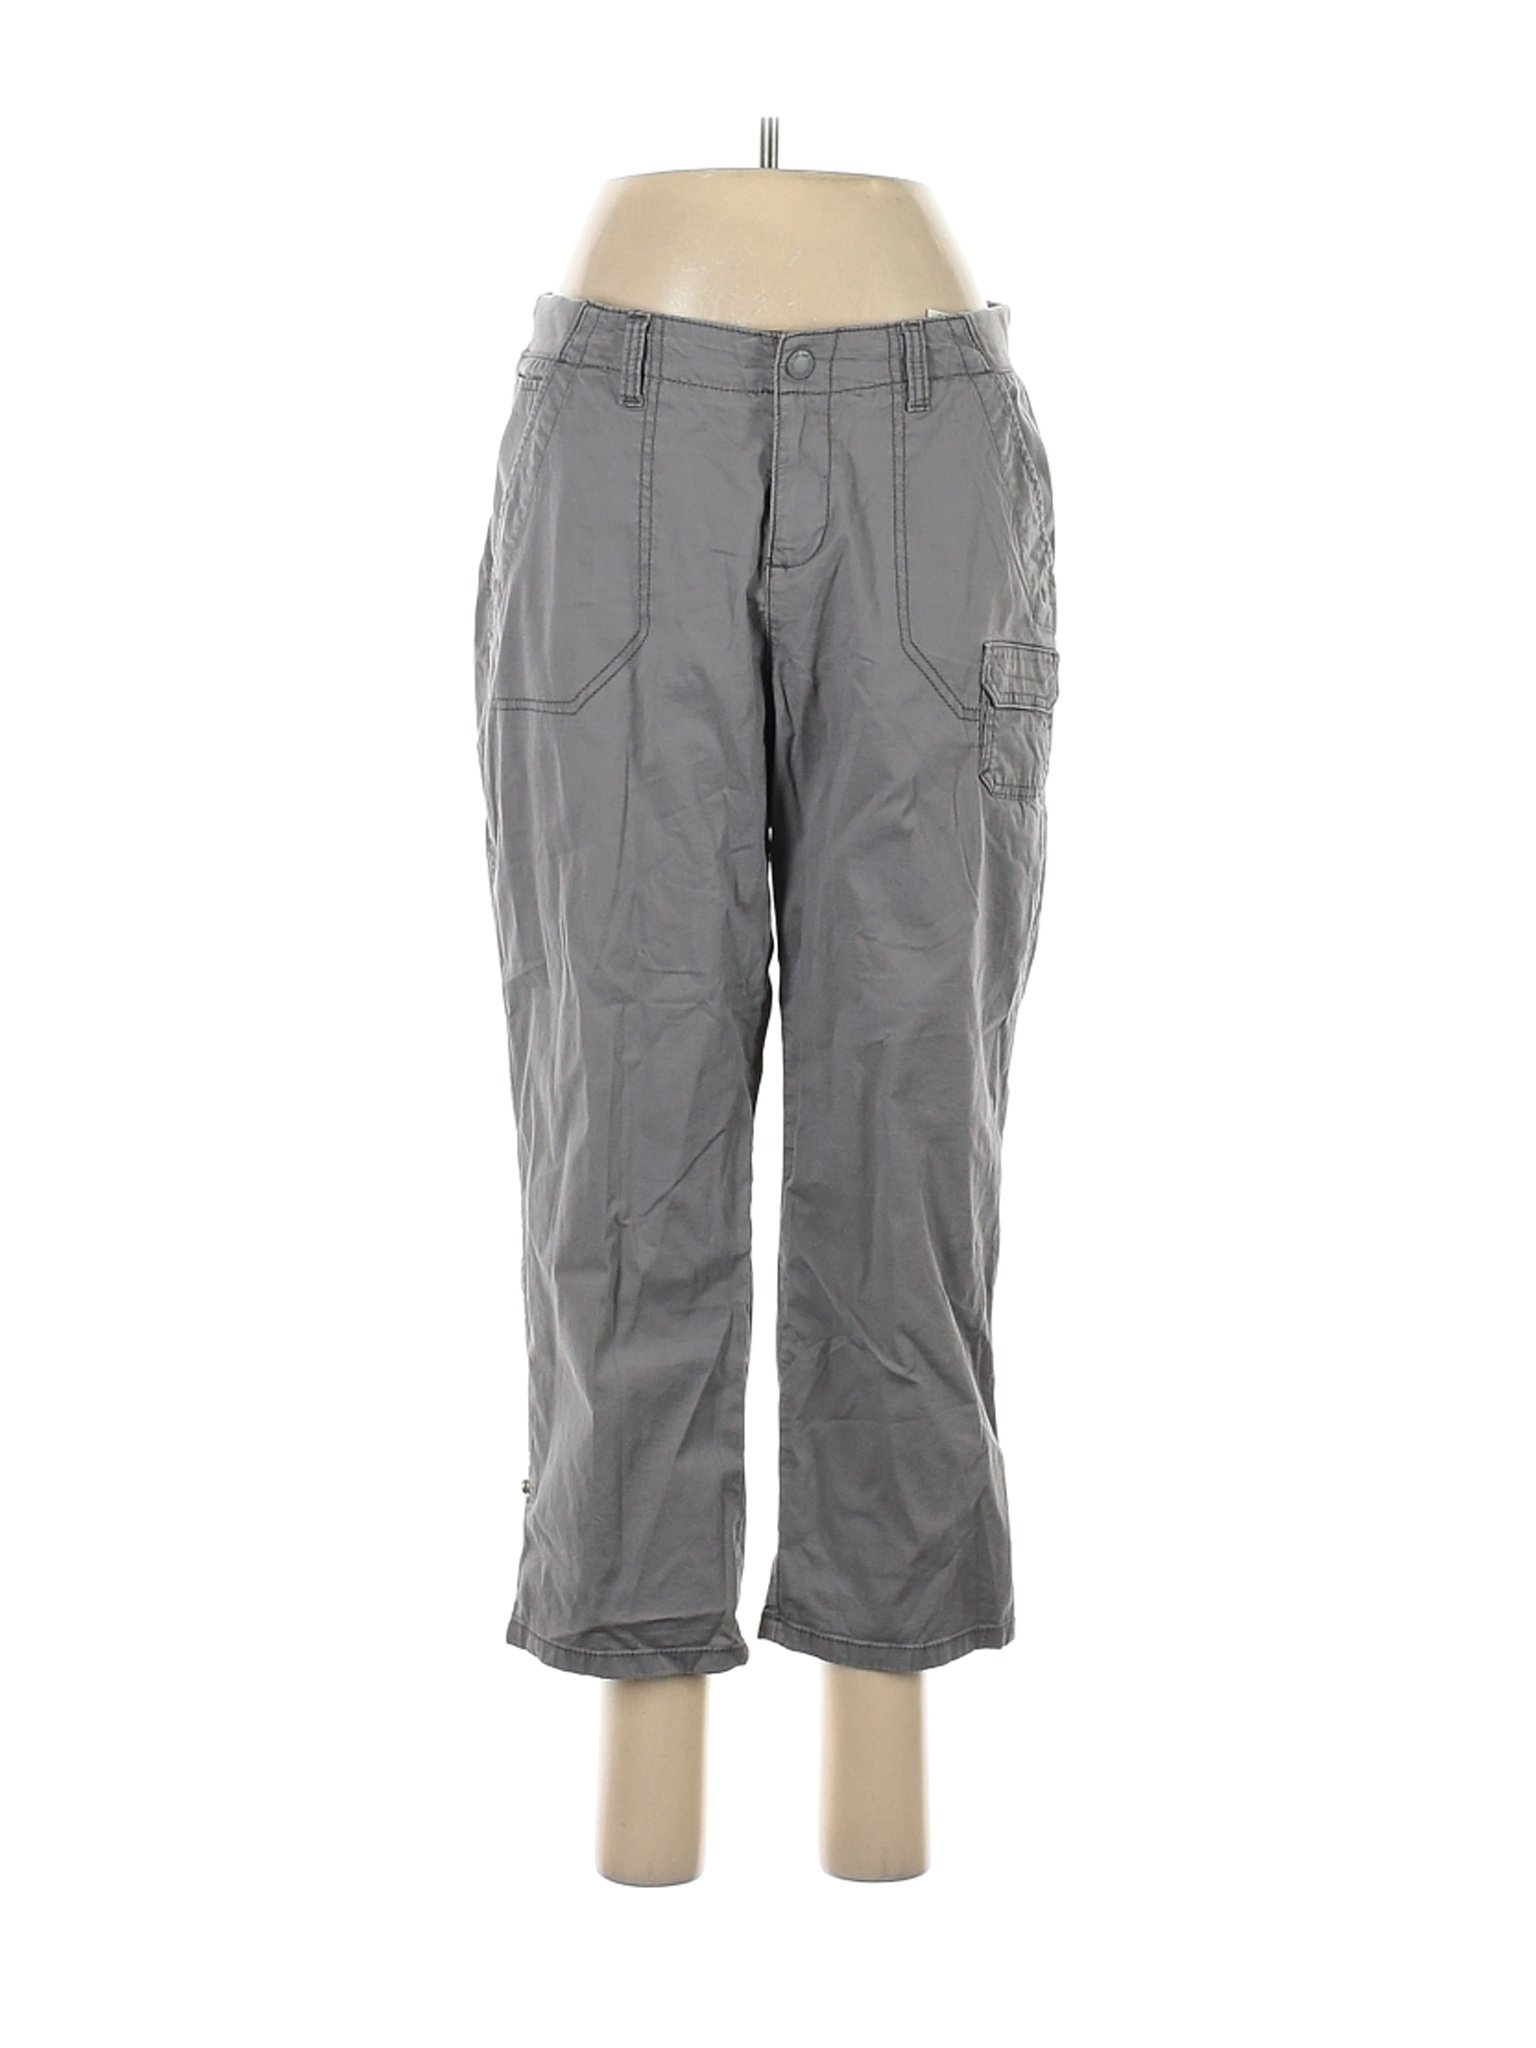 Lee Women Gray Cargo Pants 8 | eBay